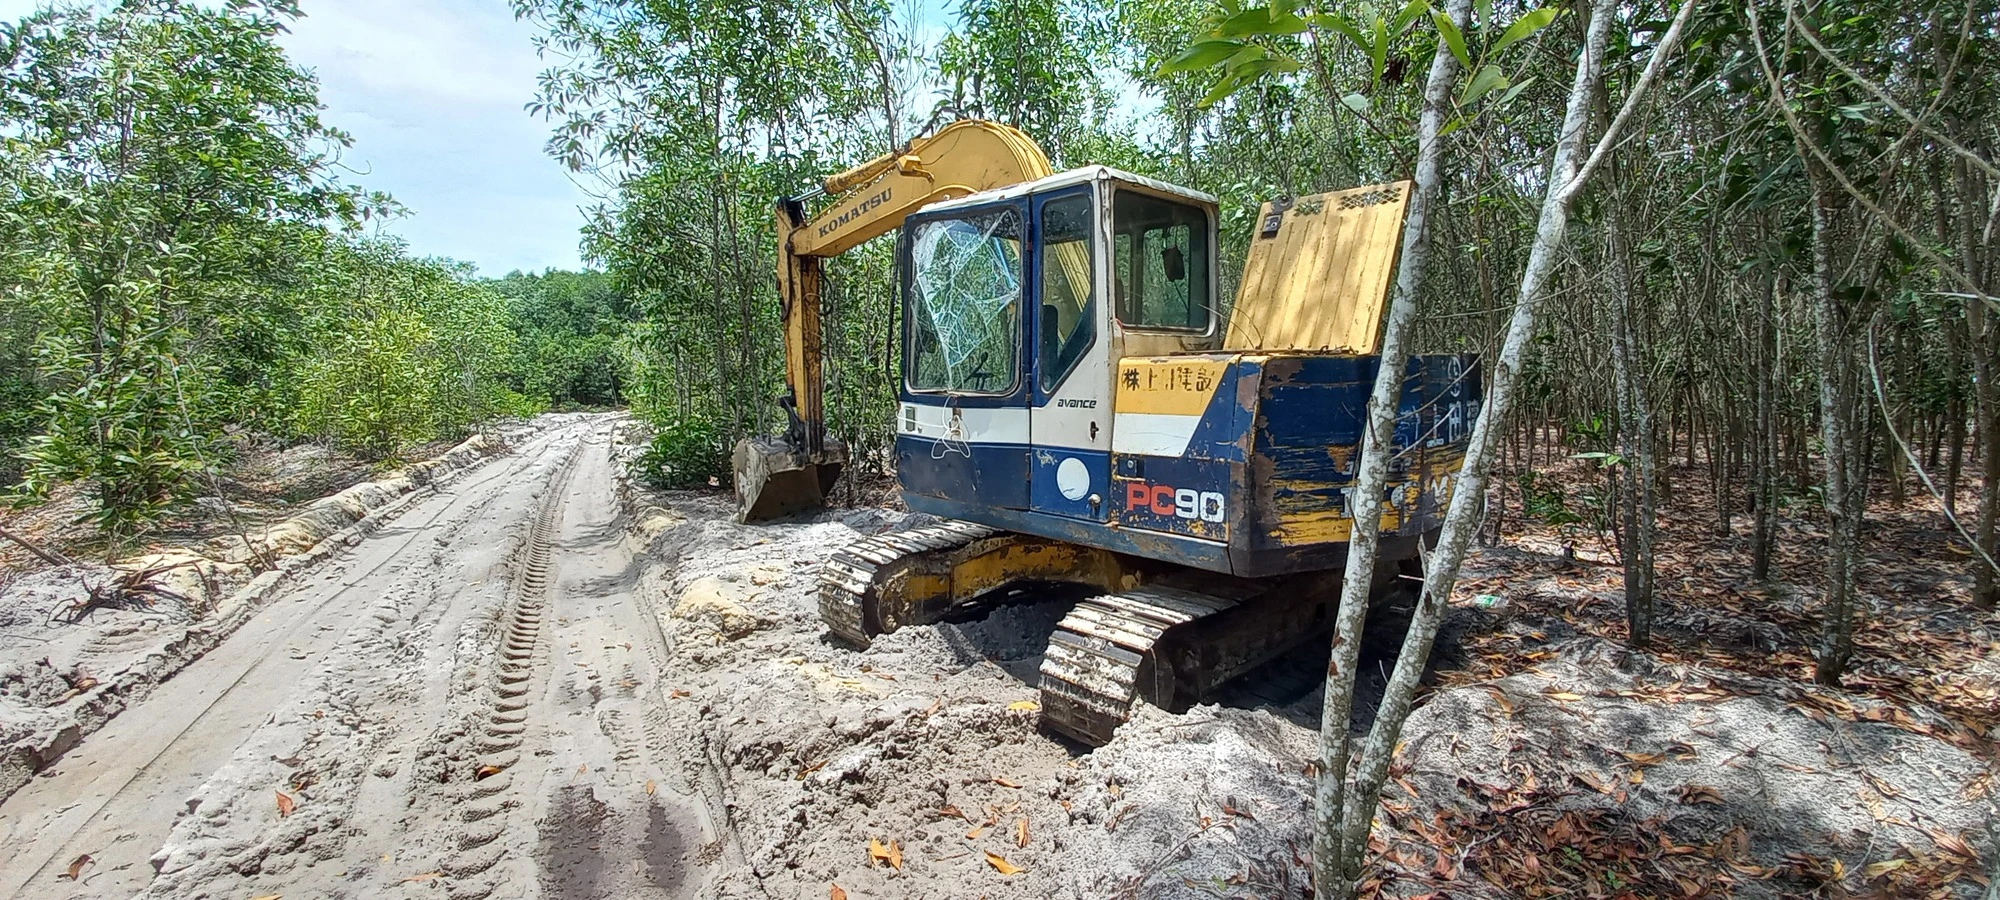 Bình Thuận: Khai thác khoáng sản trái phép ở H.Hàm Tân vẫn diễn biến phức tạp